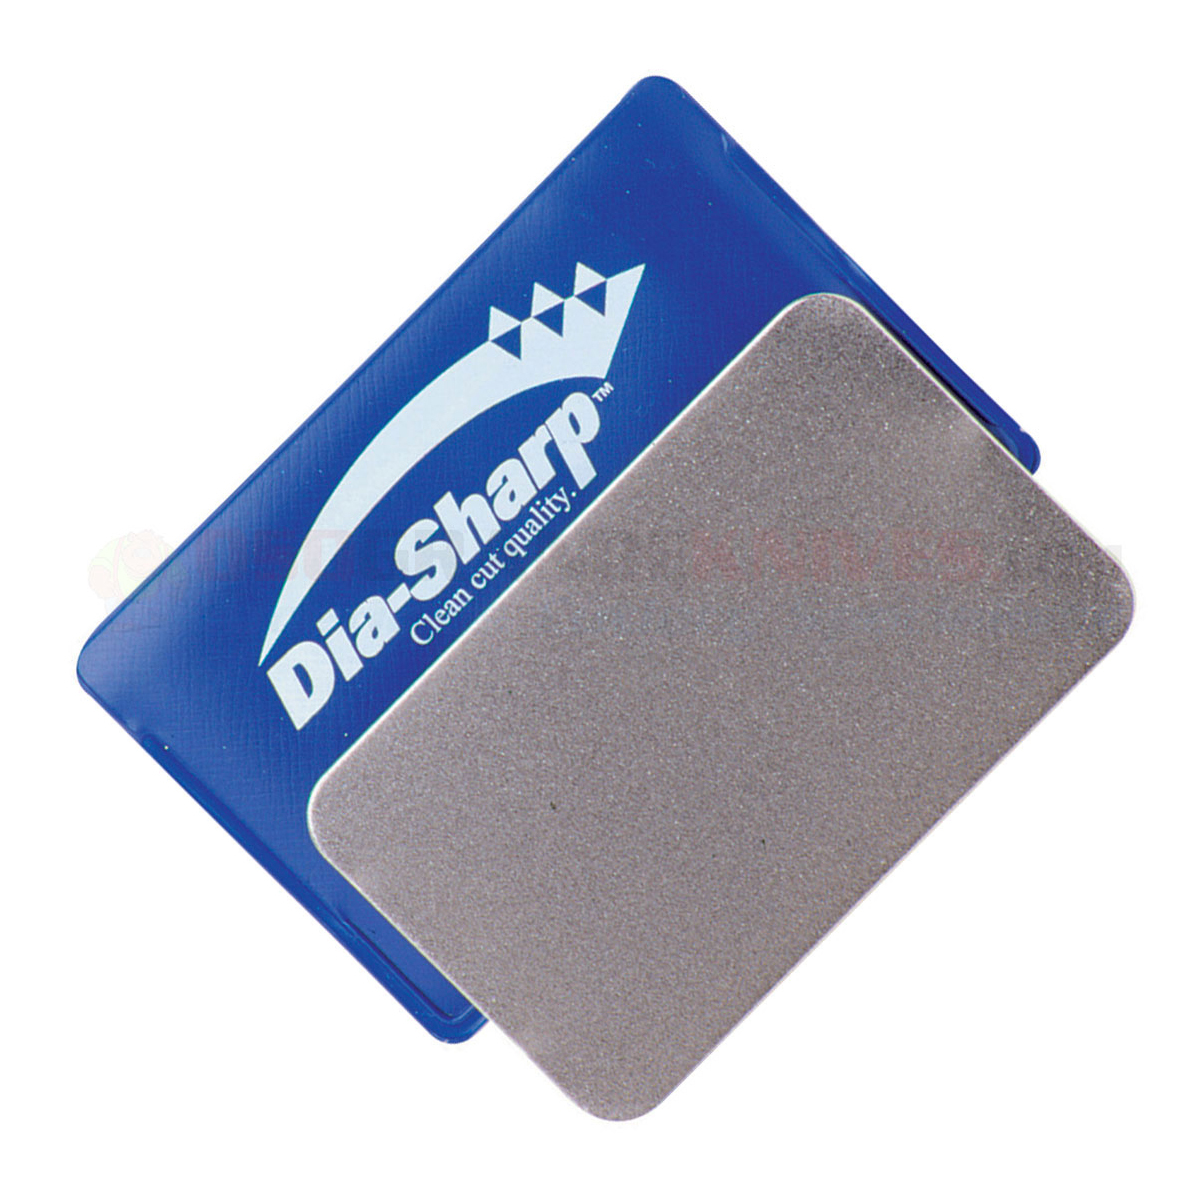 Алмазный брусок DMT Credit Card Sized Coarse, 325 меш (45 мкм) с виниловым чехлом от Ножиков